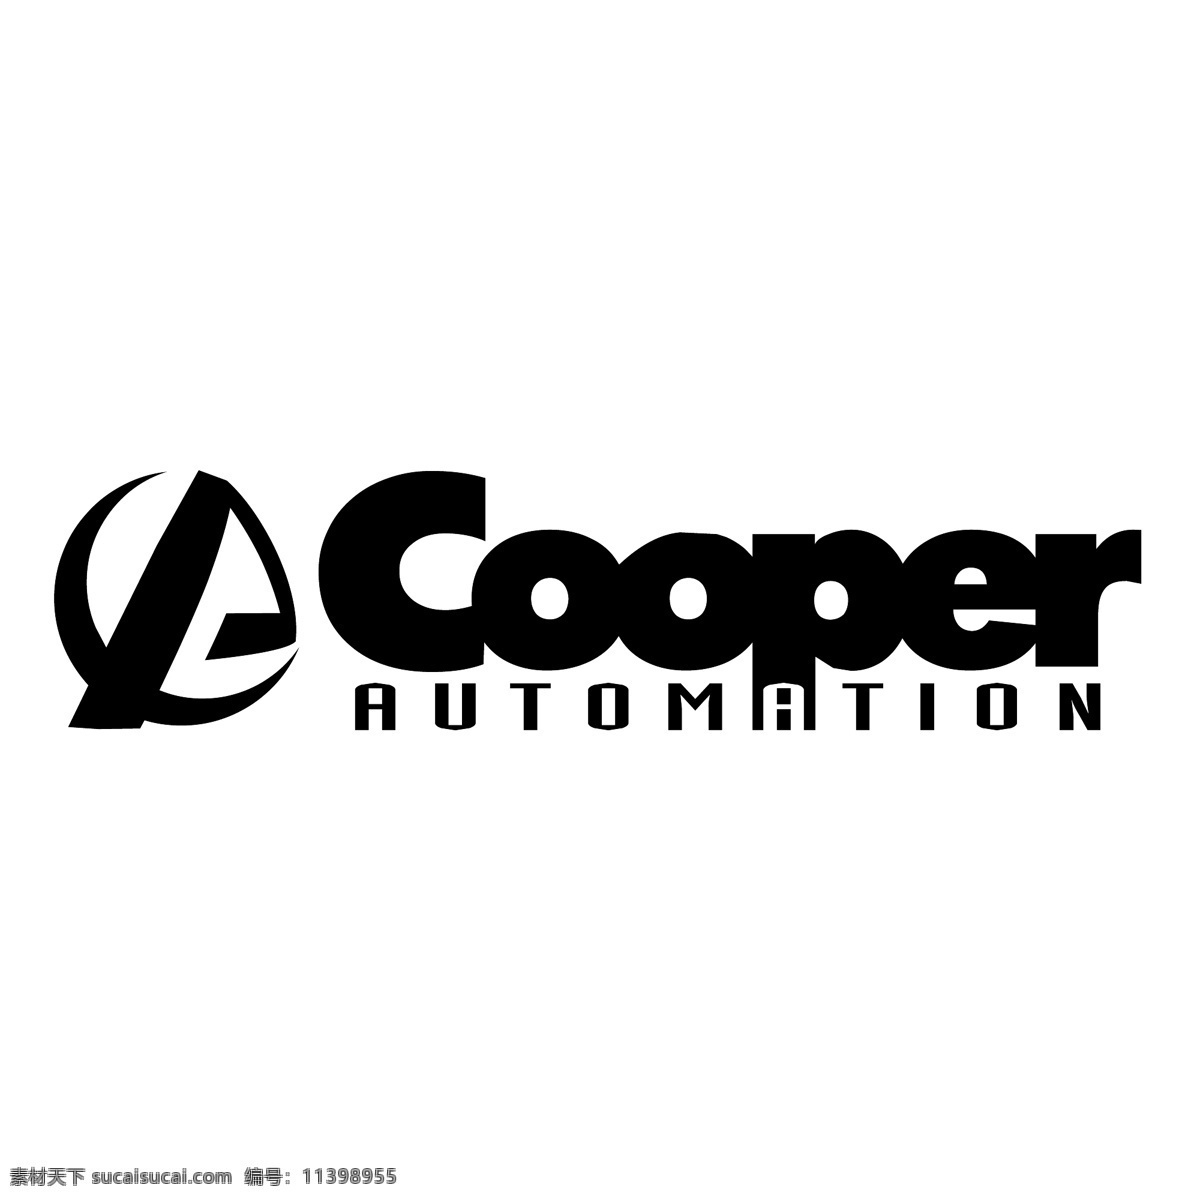 自动化 库珀 库珀自动化 库珀的载体 矢量 库珀向量 向量 矢量库珀 免费 eps向量 矢量图 建筑家居